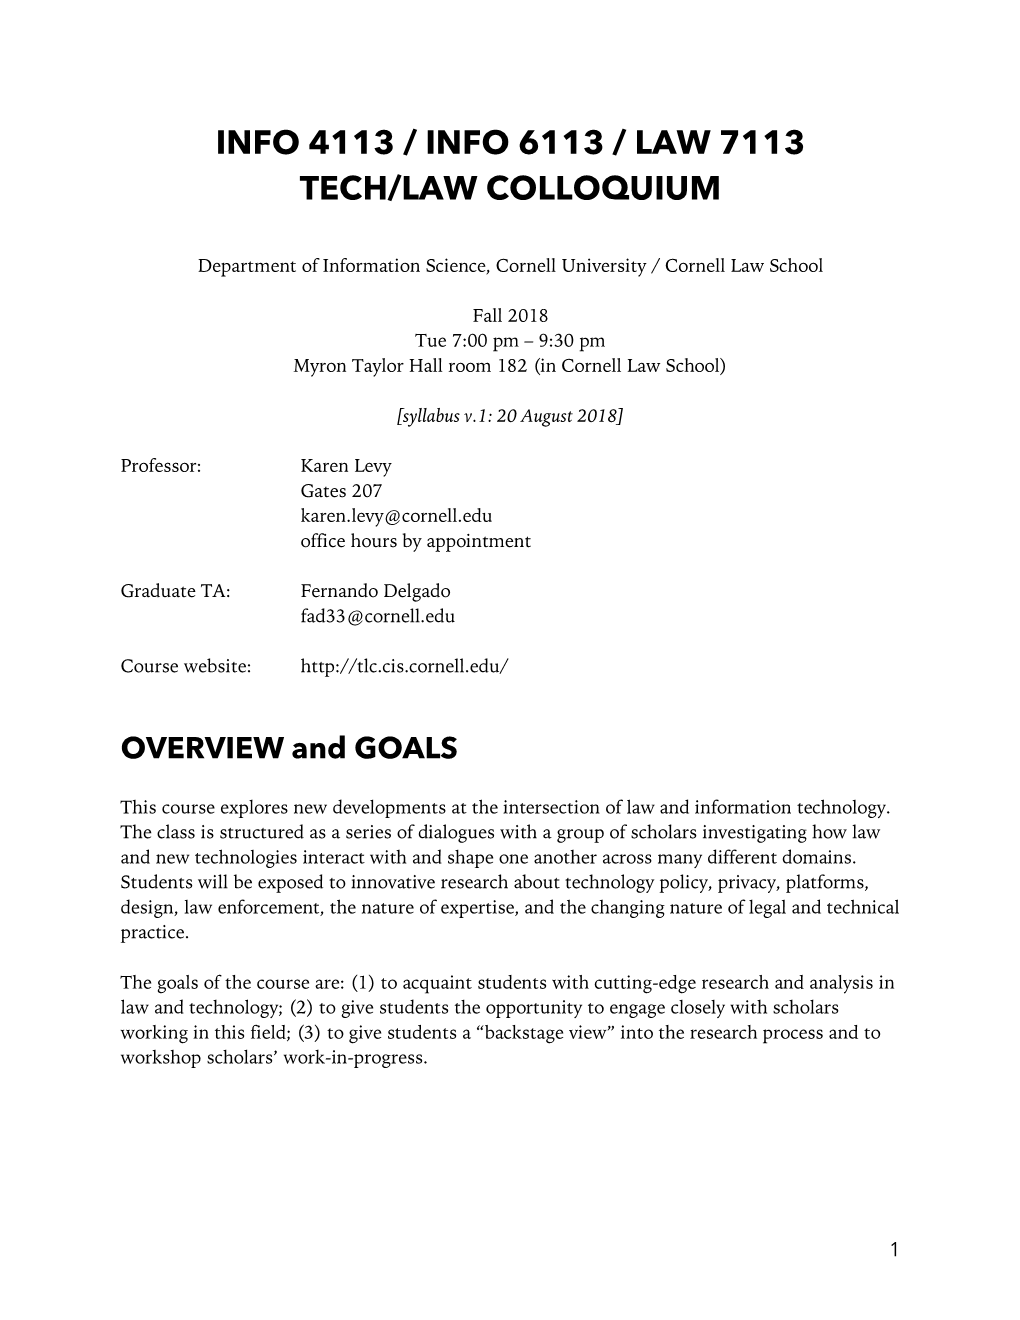 Info 4113 / Info 6113 / Law 7113 Tech/Law Colloquium